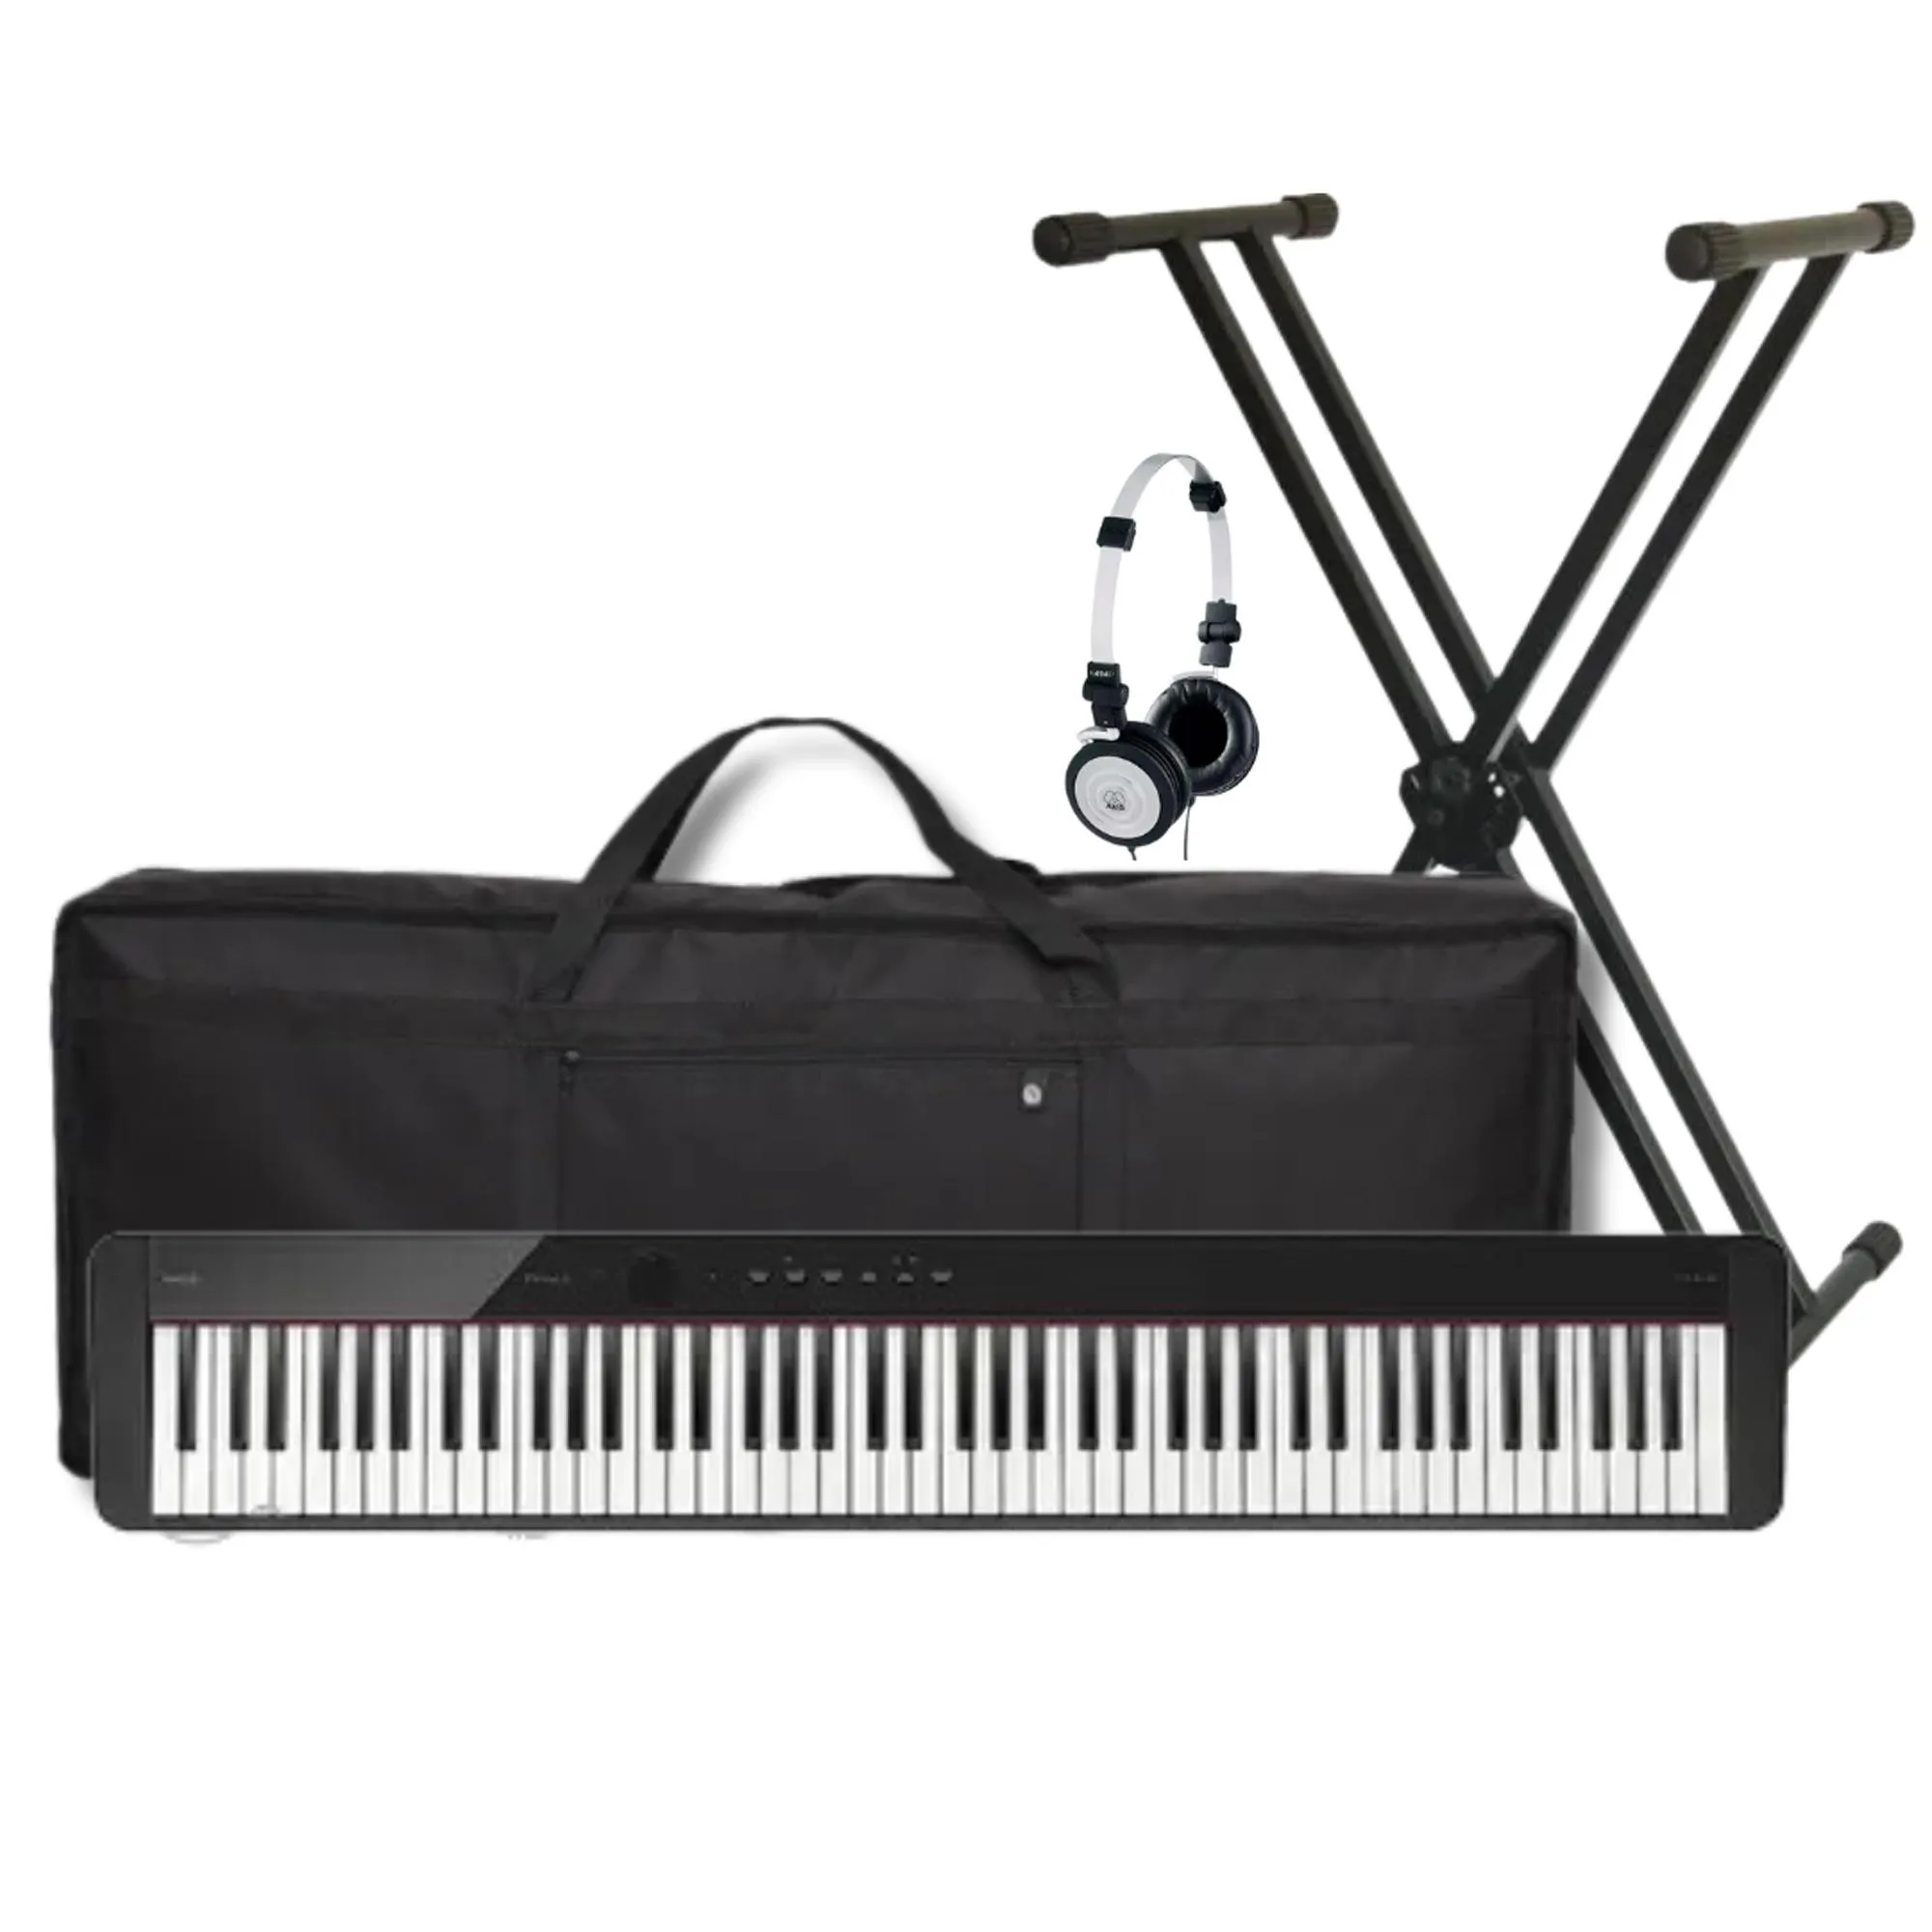 Kit Piano Digital Casio PX-S1100BK PT+ Suporte + Acessórios por 5.760,00 à vista no boleto/pix ou parcele em até 12x sem juros. Compre na loja Mundomax!